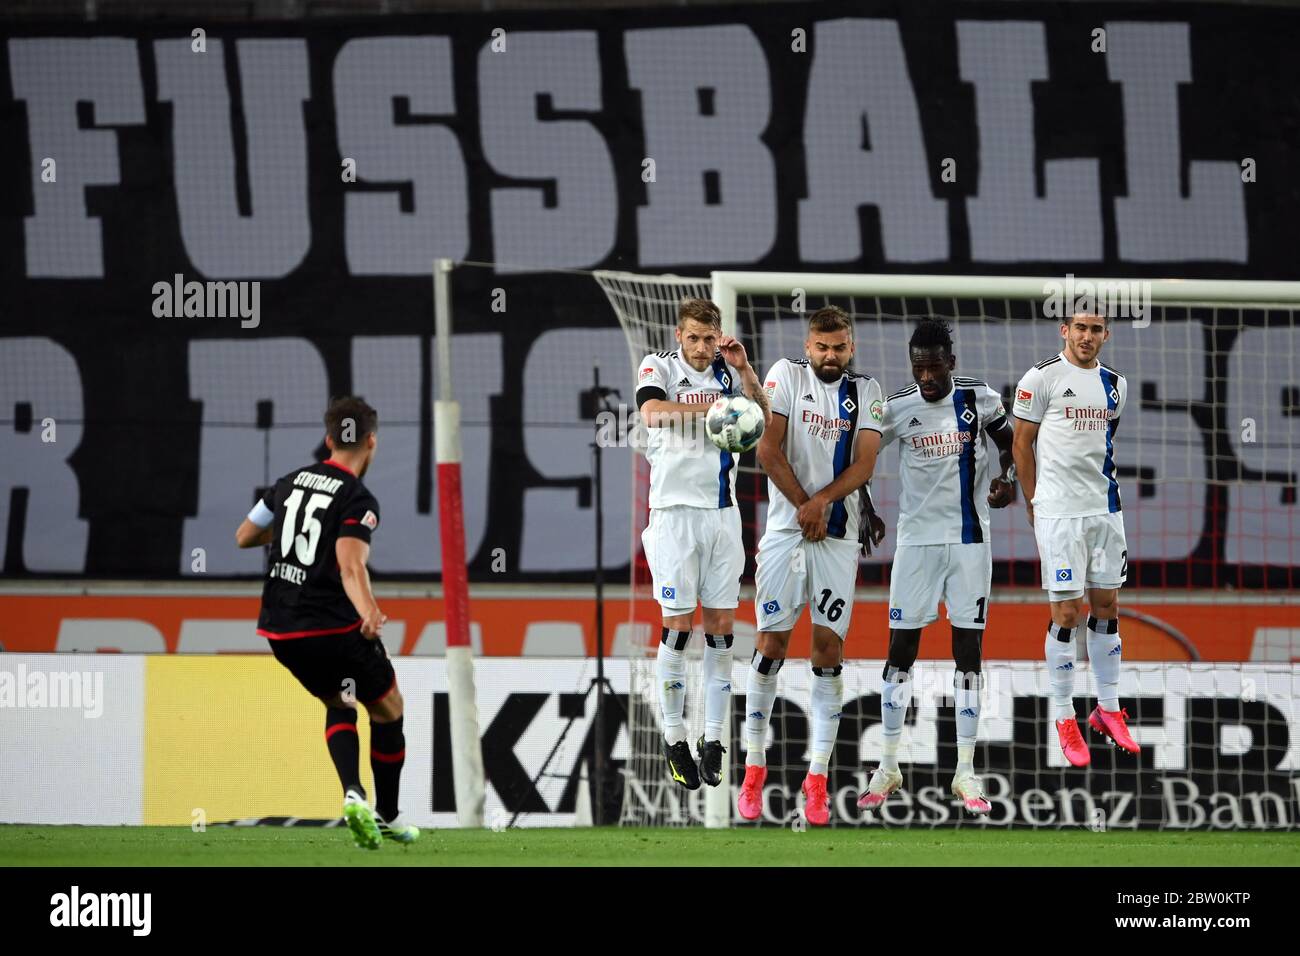 Stuttgart free kick hits the crossbar : r/VfBStuttgart